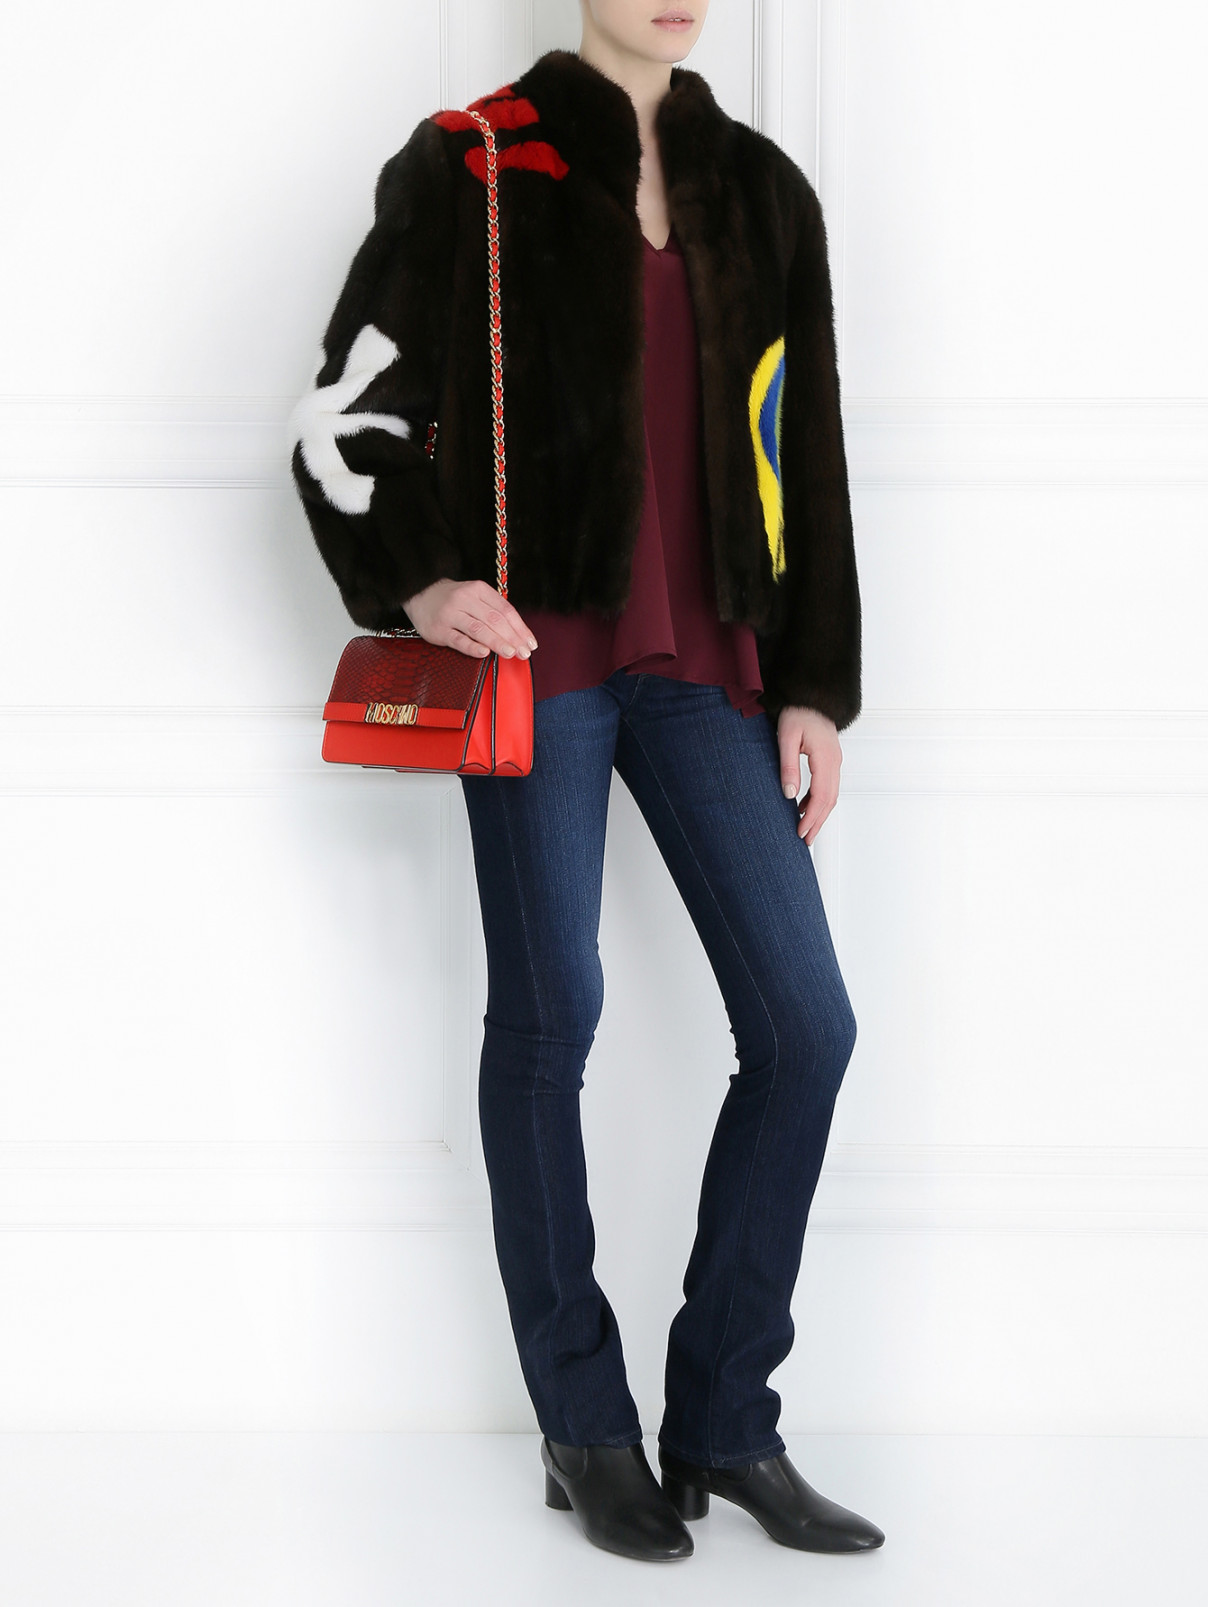 Шуба с контрастными вставками Moschino Couture  –  Модель Общий вид  – Цвет:  Коричневый